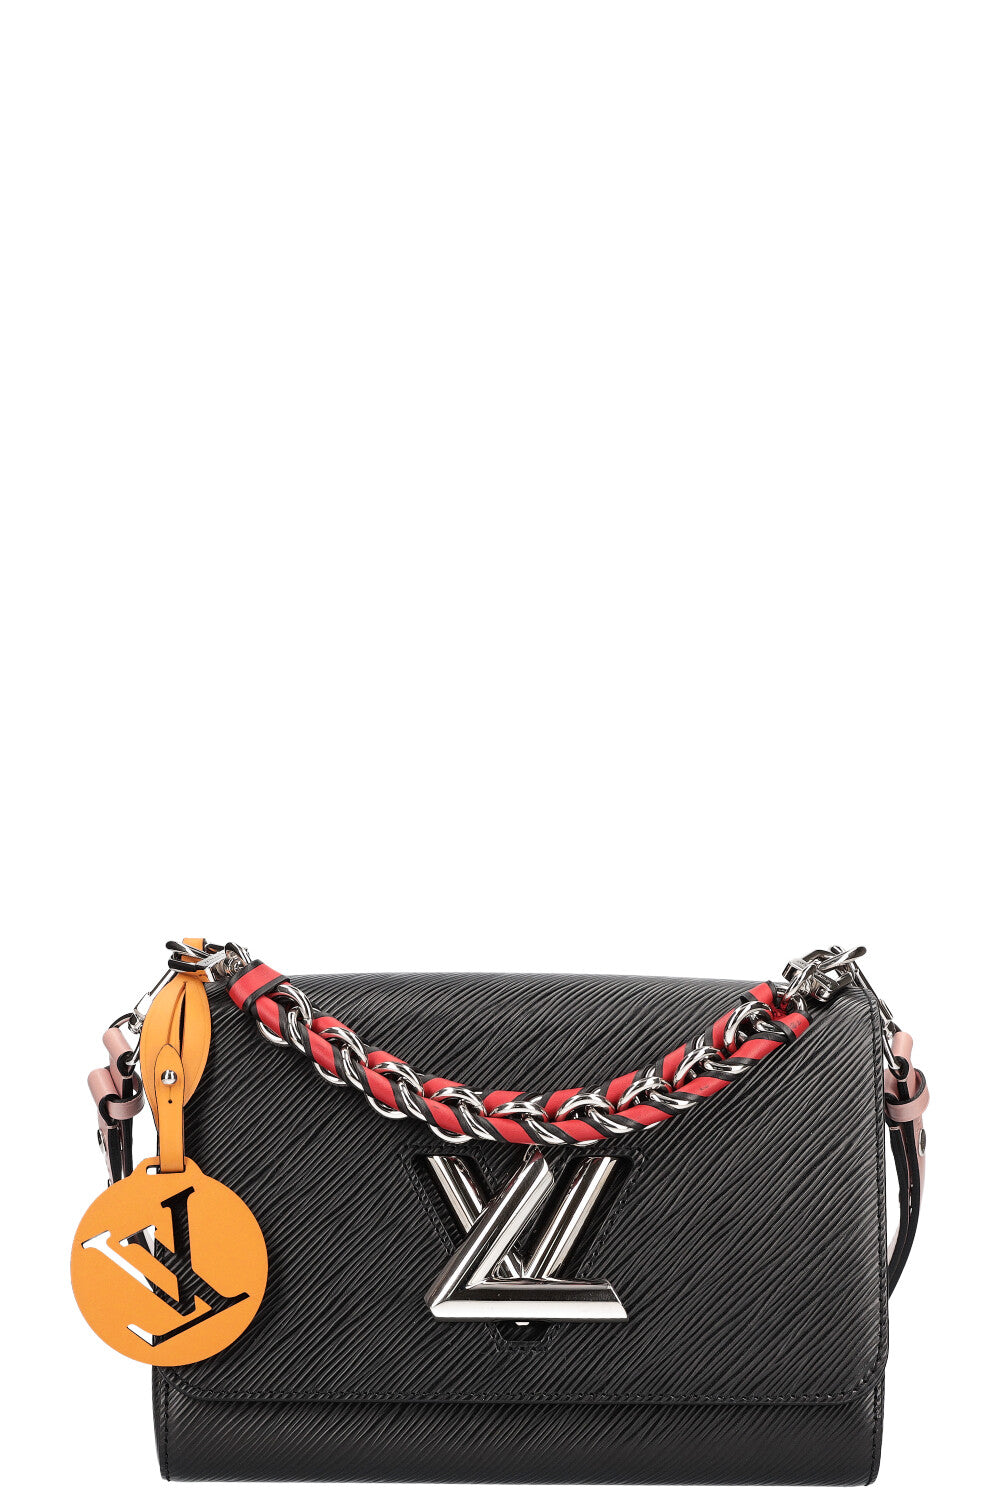 Authentic Louis Vuitton Black Electric Epi Twist MM Chain Bag